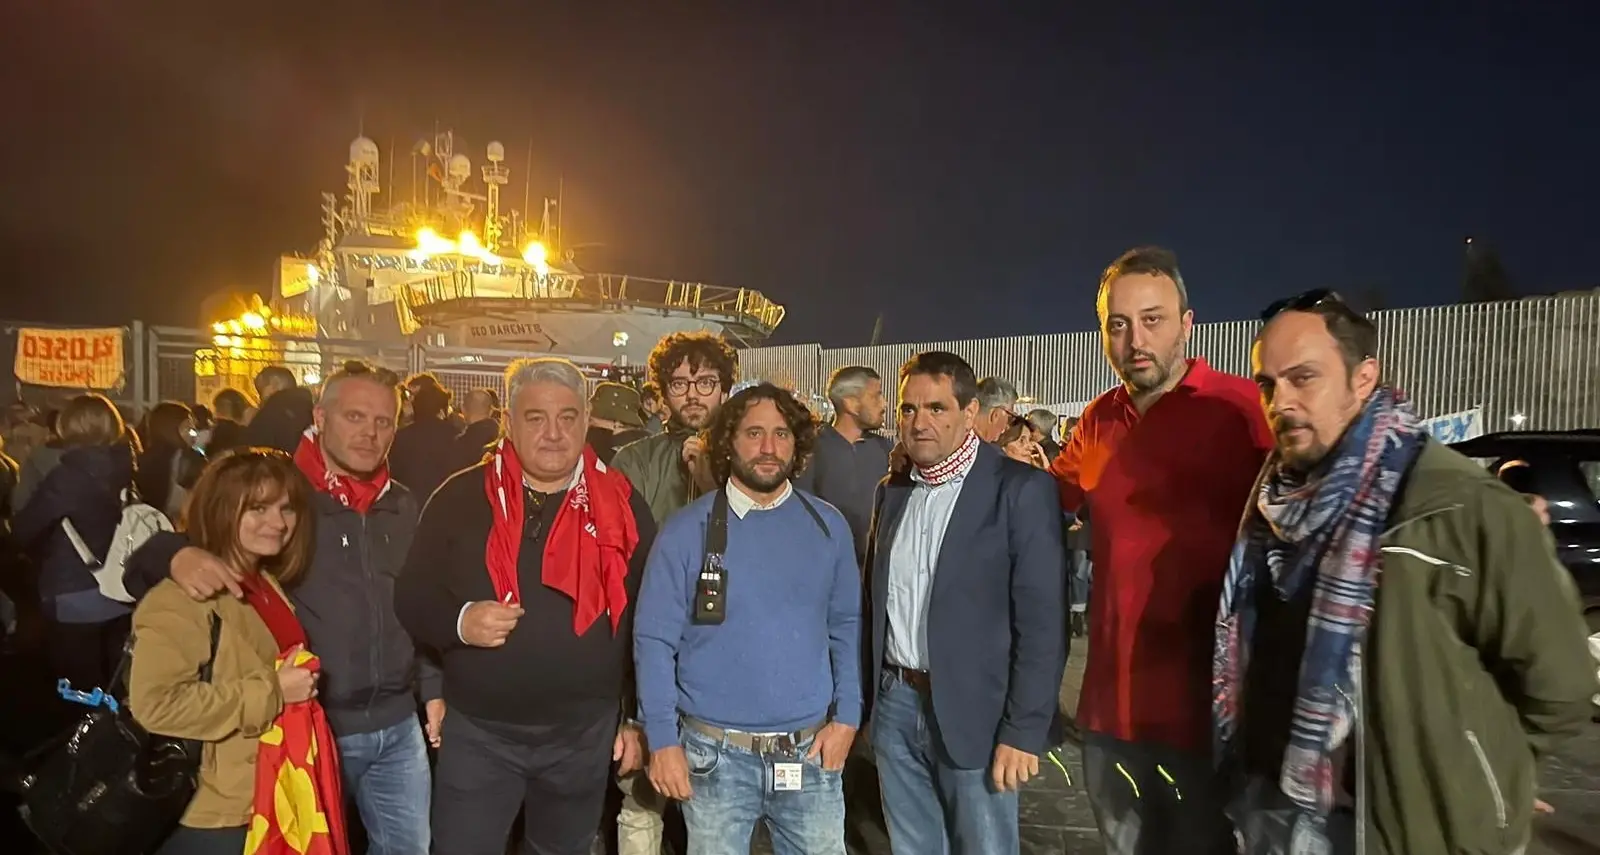 A Catania vince la società civile, tutti a terra i migranti